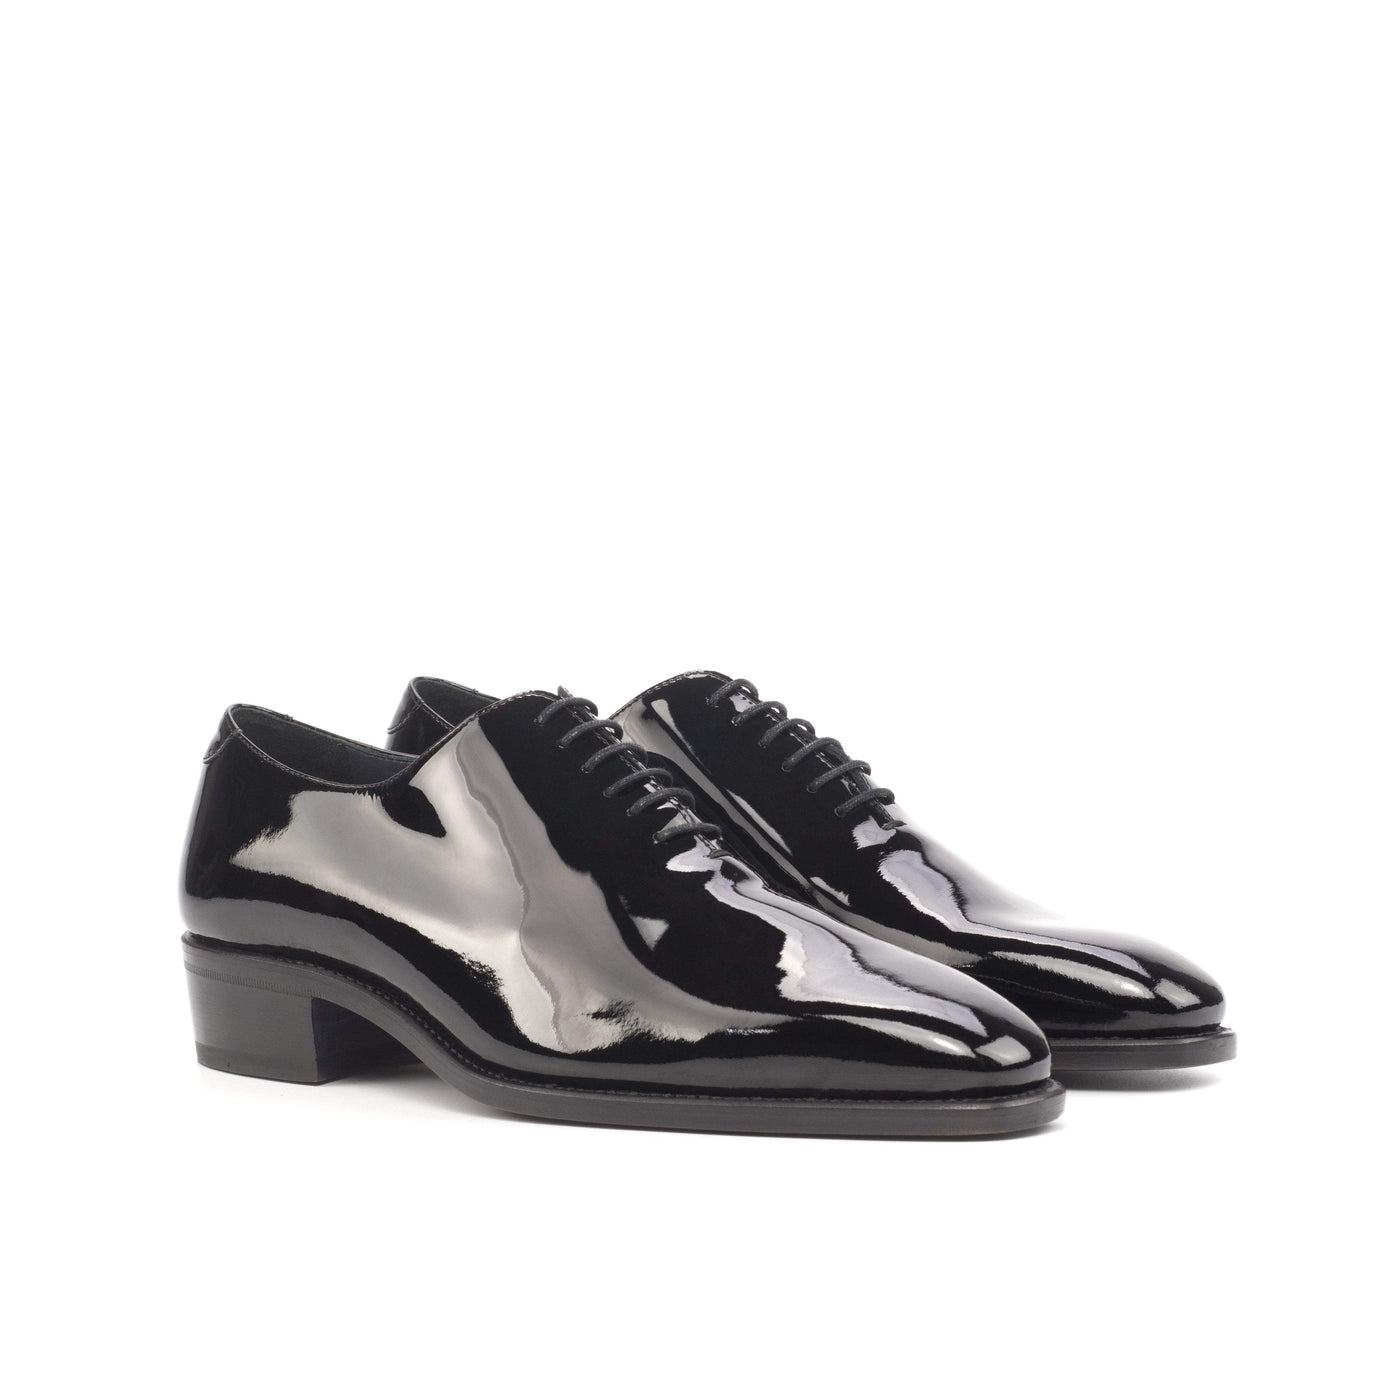 Men's Wholecut Shoes Leather Goodyear Welt Black 4571 3- MERRIMIUM